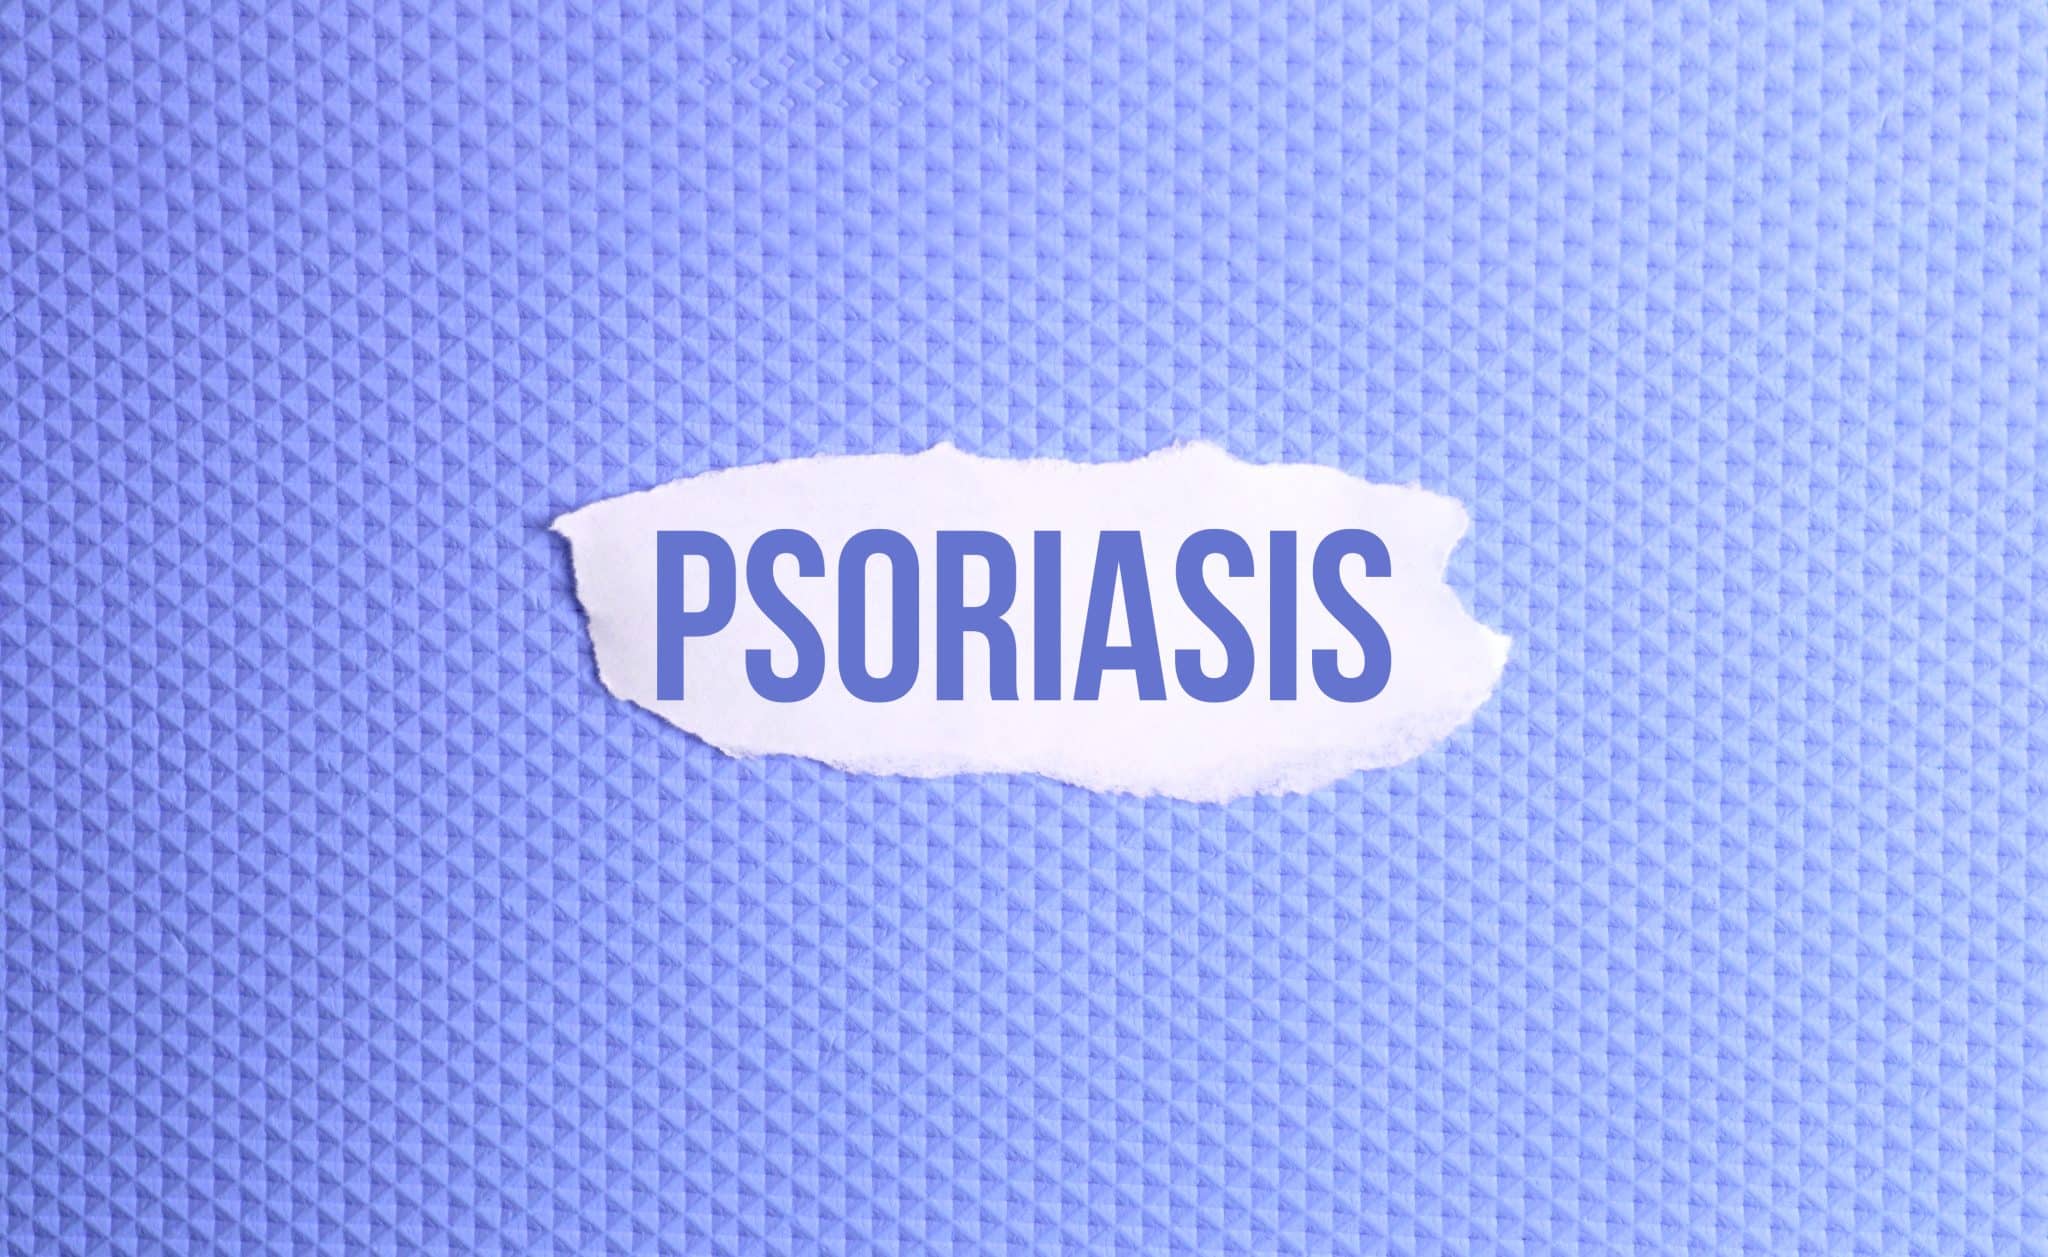 L’huile de massage pour le psoriasis, usages, bienfaits, précautions indispensables